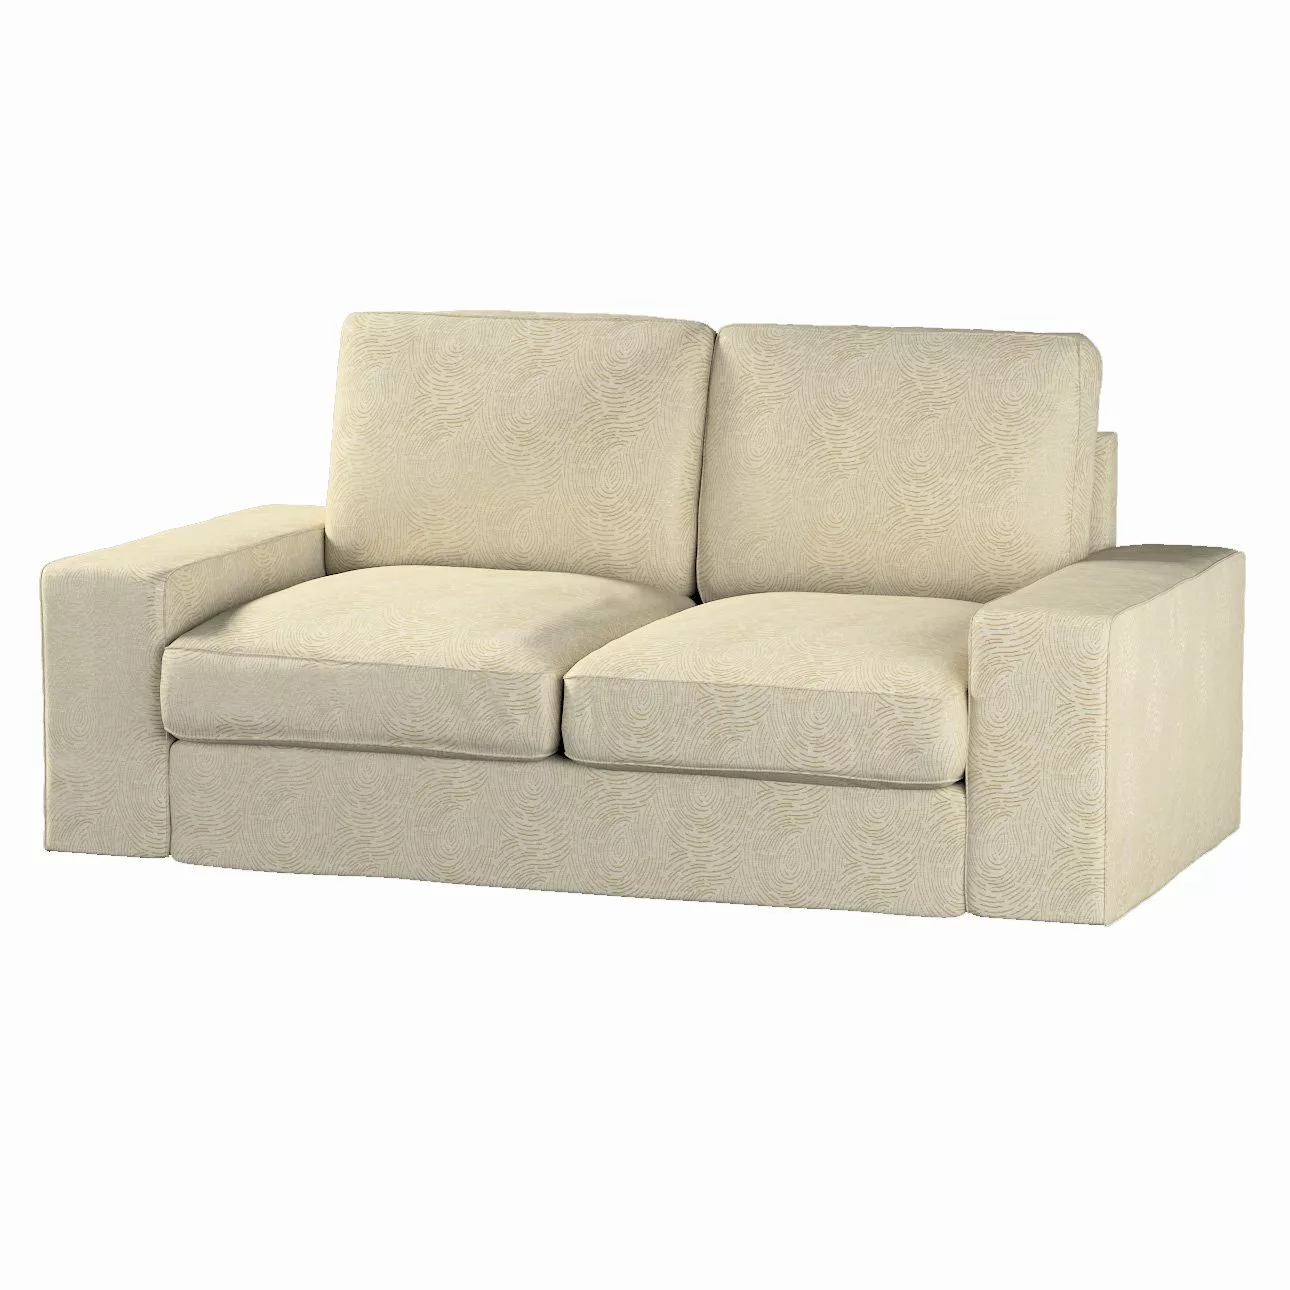 Bezug für Kivik 2-Sitzer Sofa, beige-golden, Bezug für Sofa Kivik 2-Sitzer, günstig online kaufen